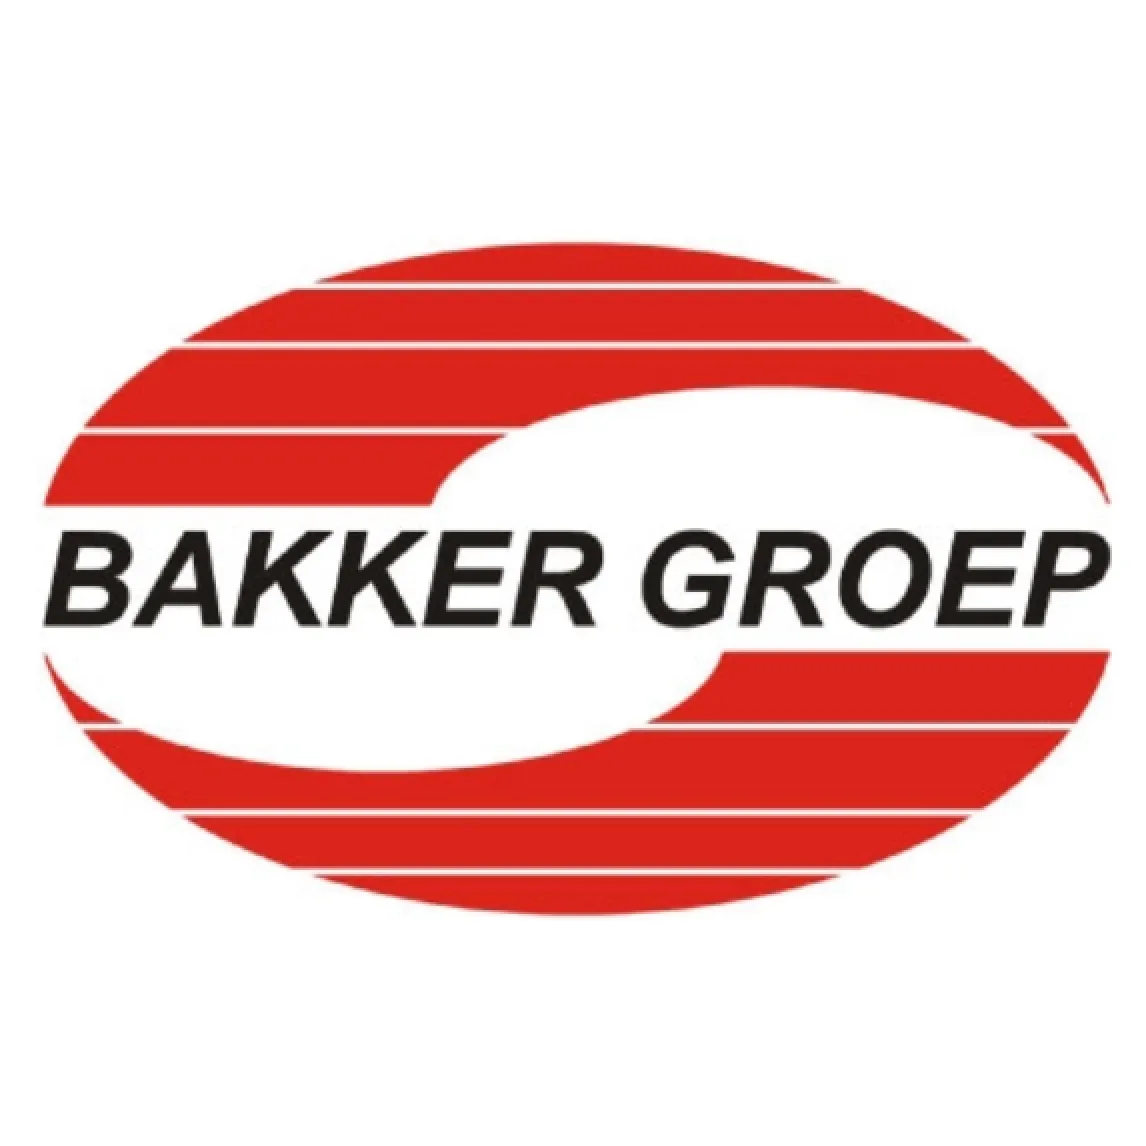 Bakker Groep logo